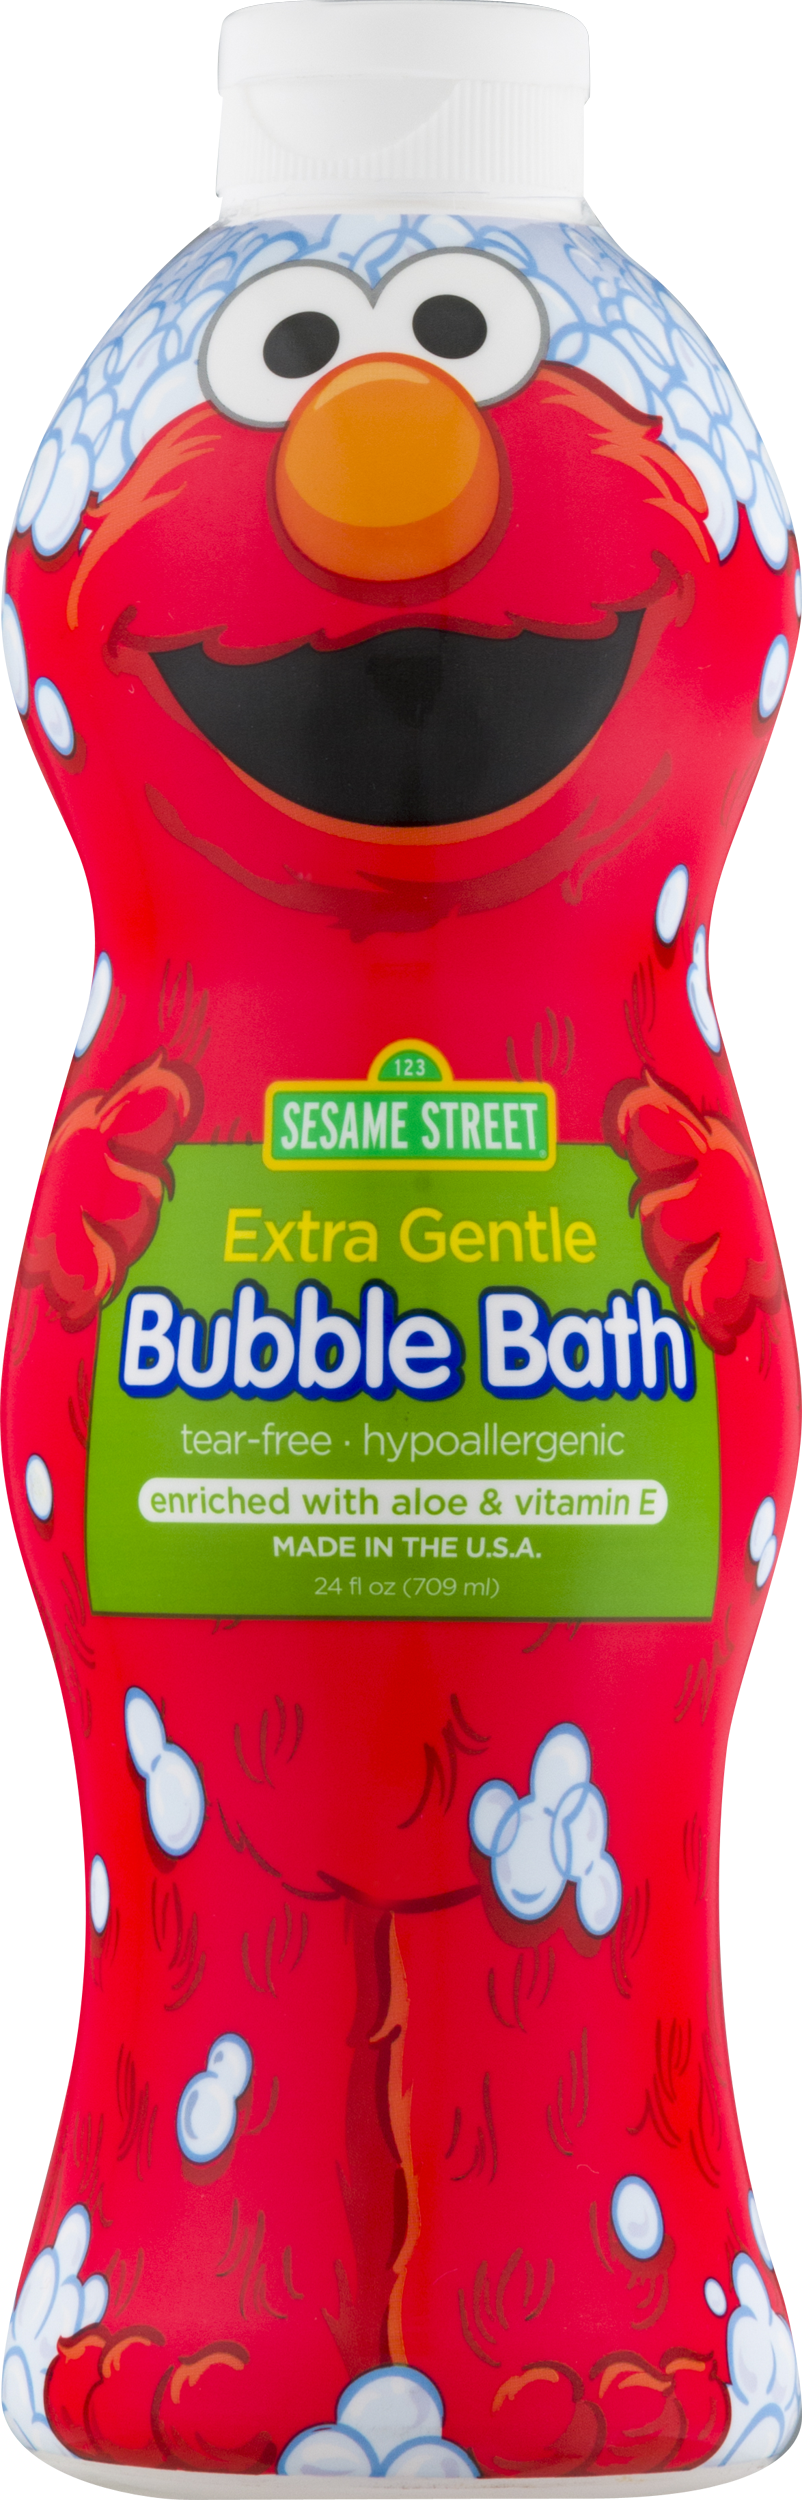 Elmo Bubble Bath Product PNG image